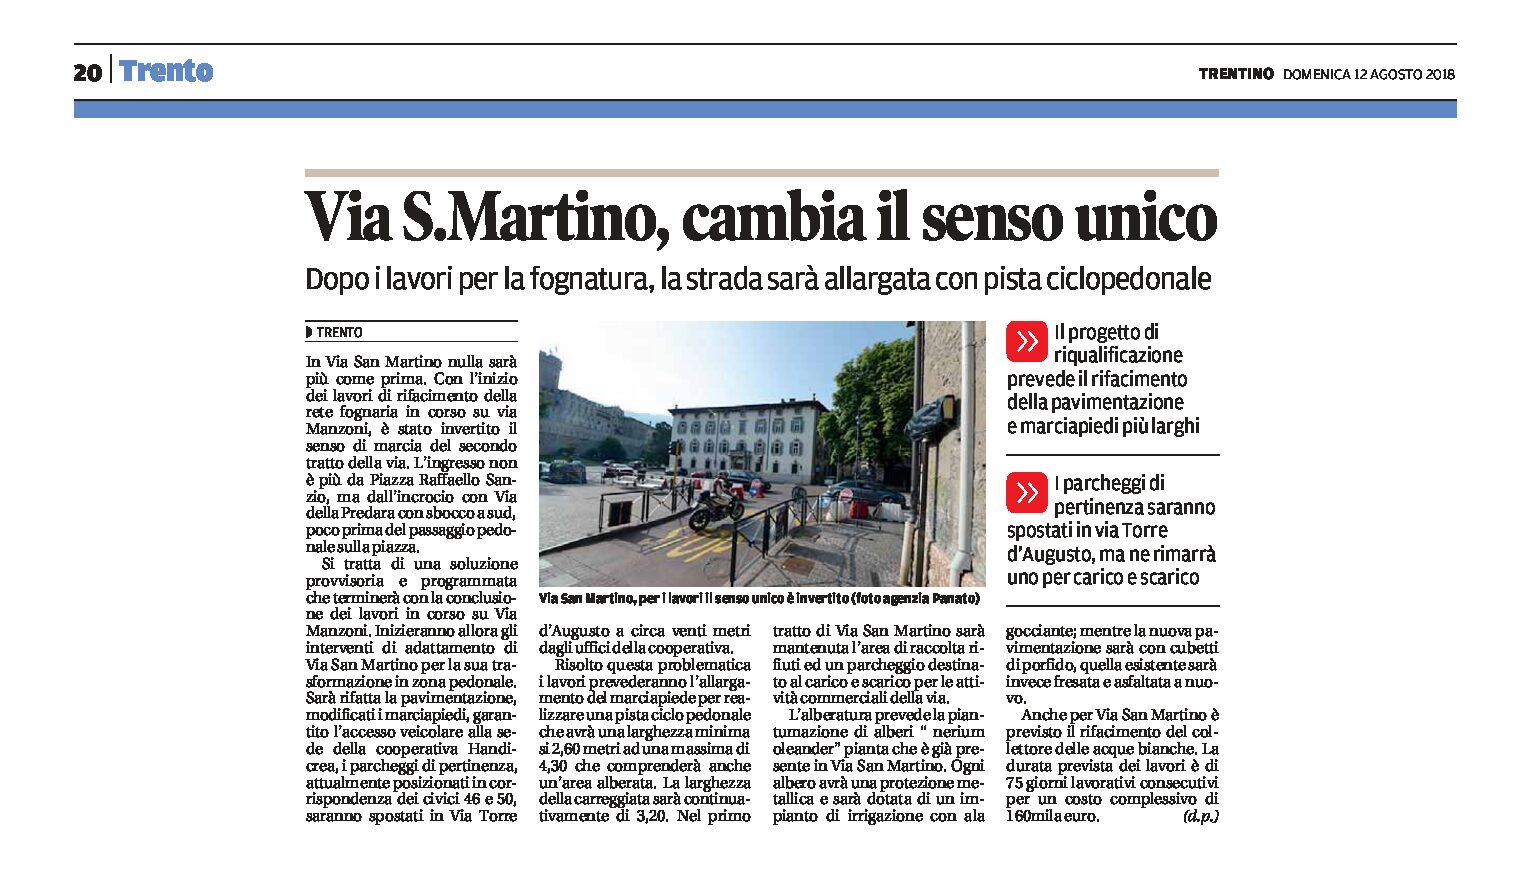 Trento, via San Martino: la strada sarà allargata con pista ciclopedonale. Cambia il senso unico